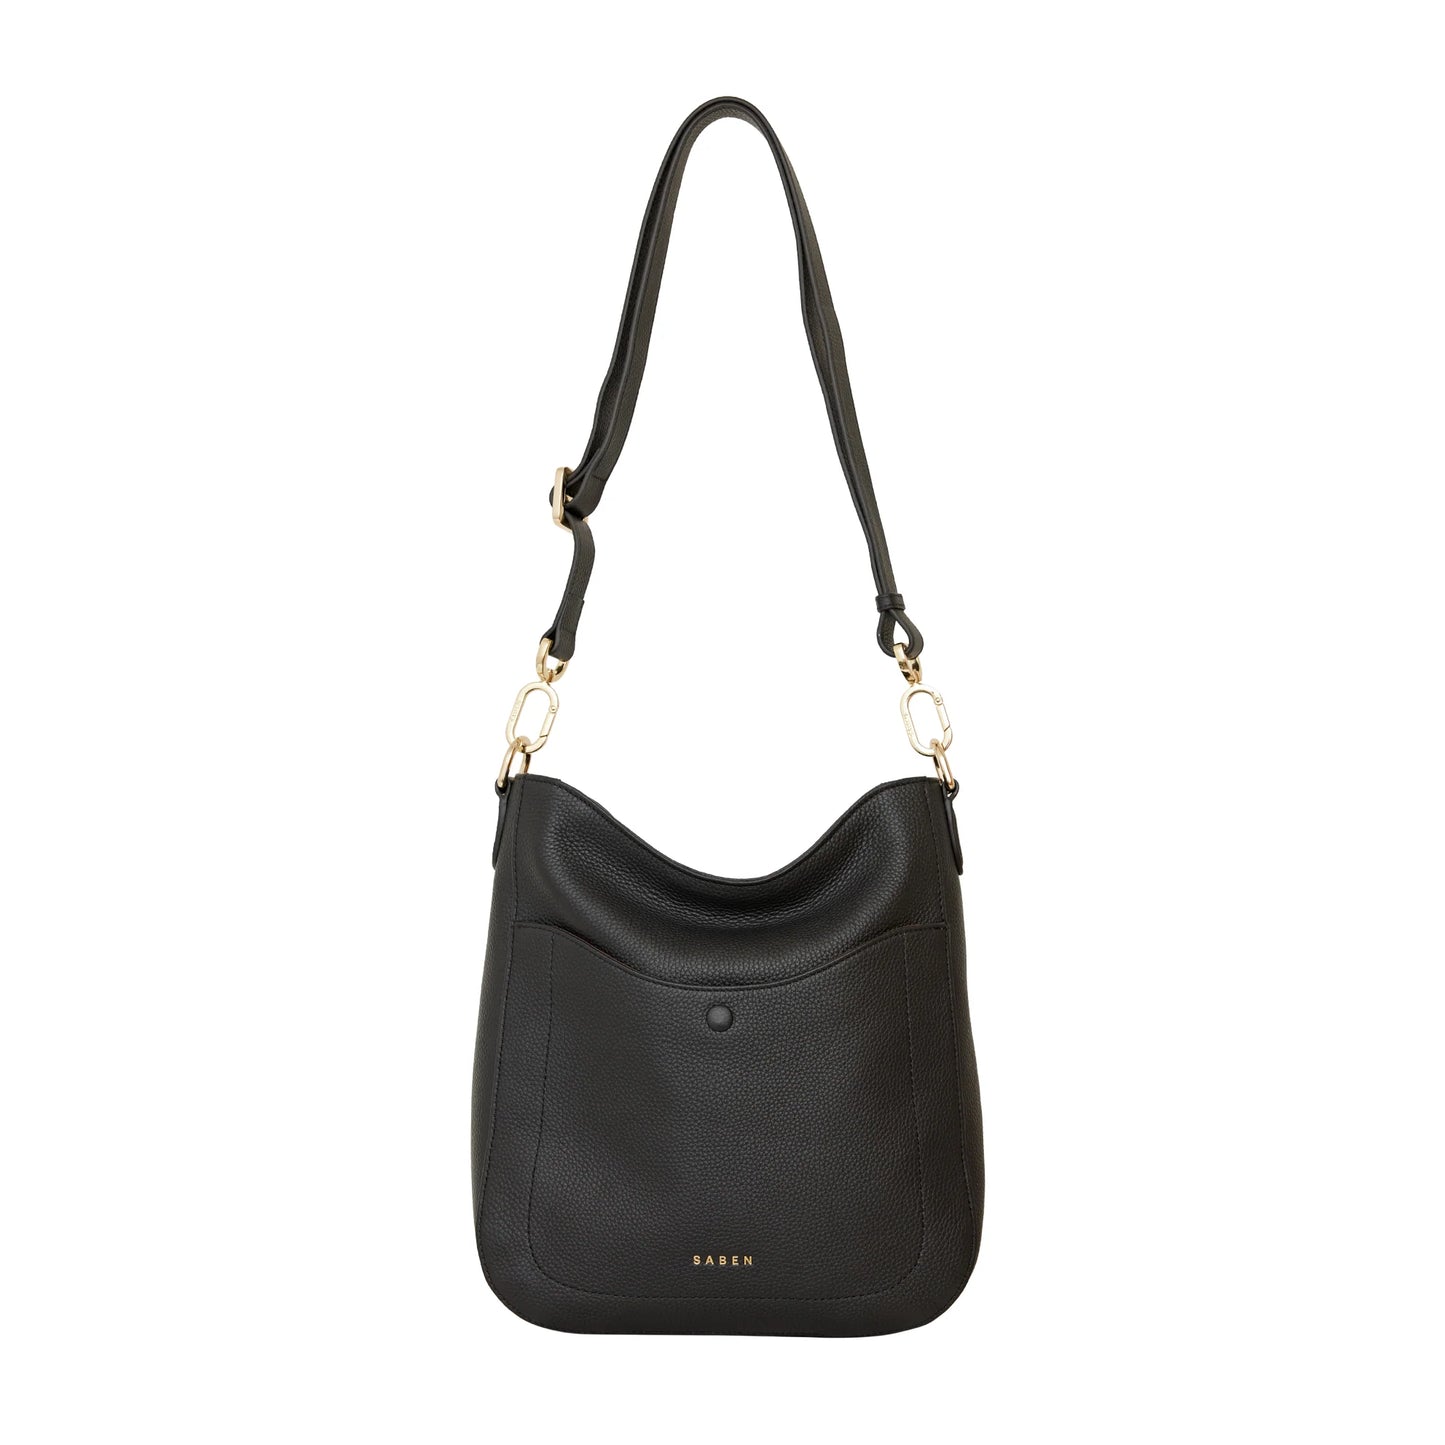 SABEN // Rebe Shoulder Bag BLACK